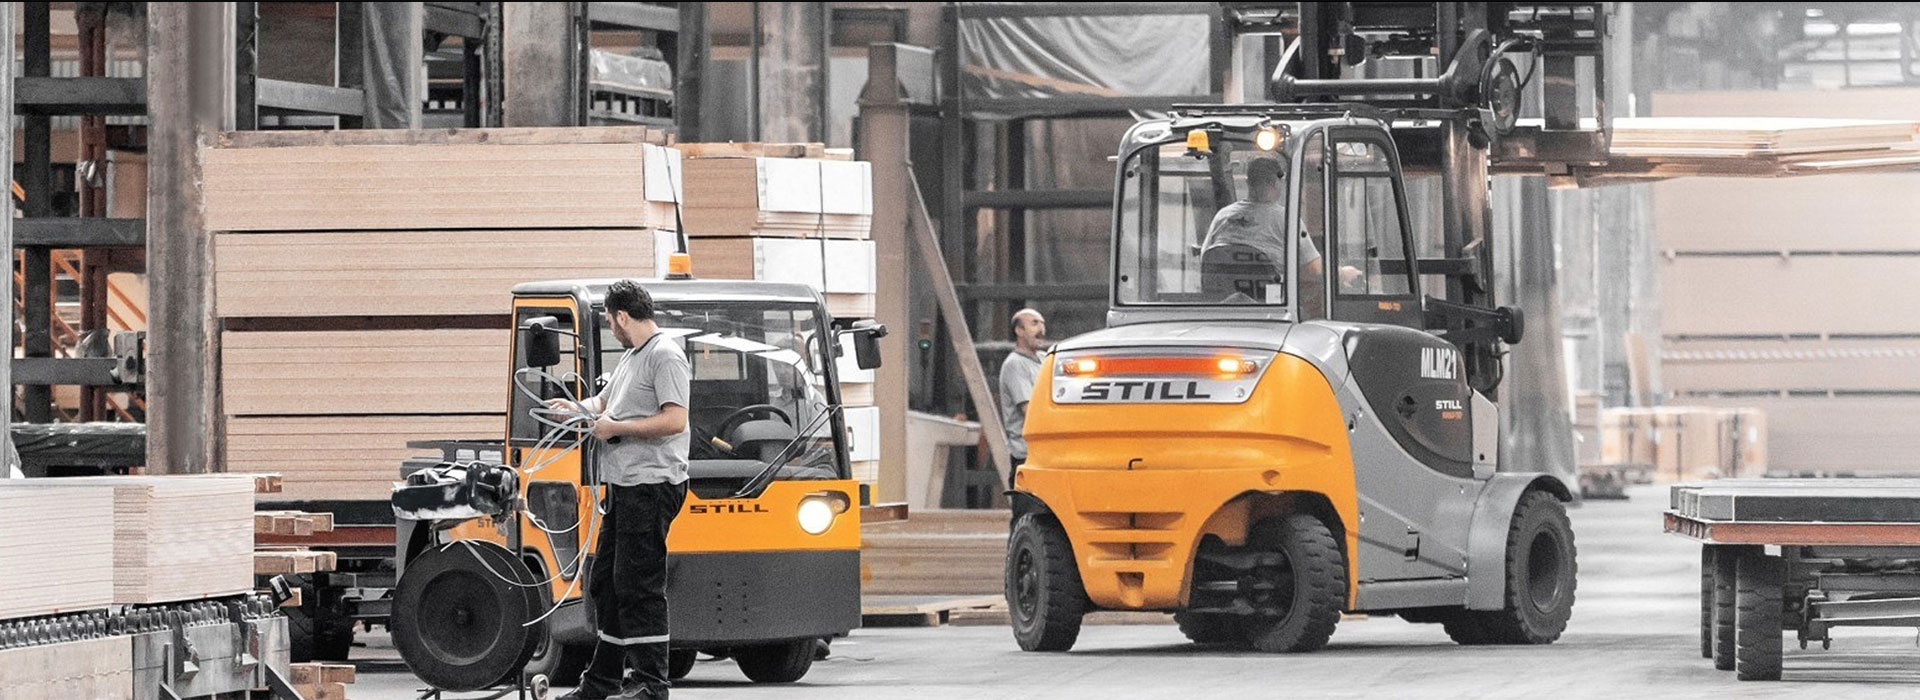 EMF İş Makineleri | Stil Forklift Yetkili Satış| Servis| Yedek Parça ve Kiralama Bayi